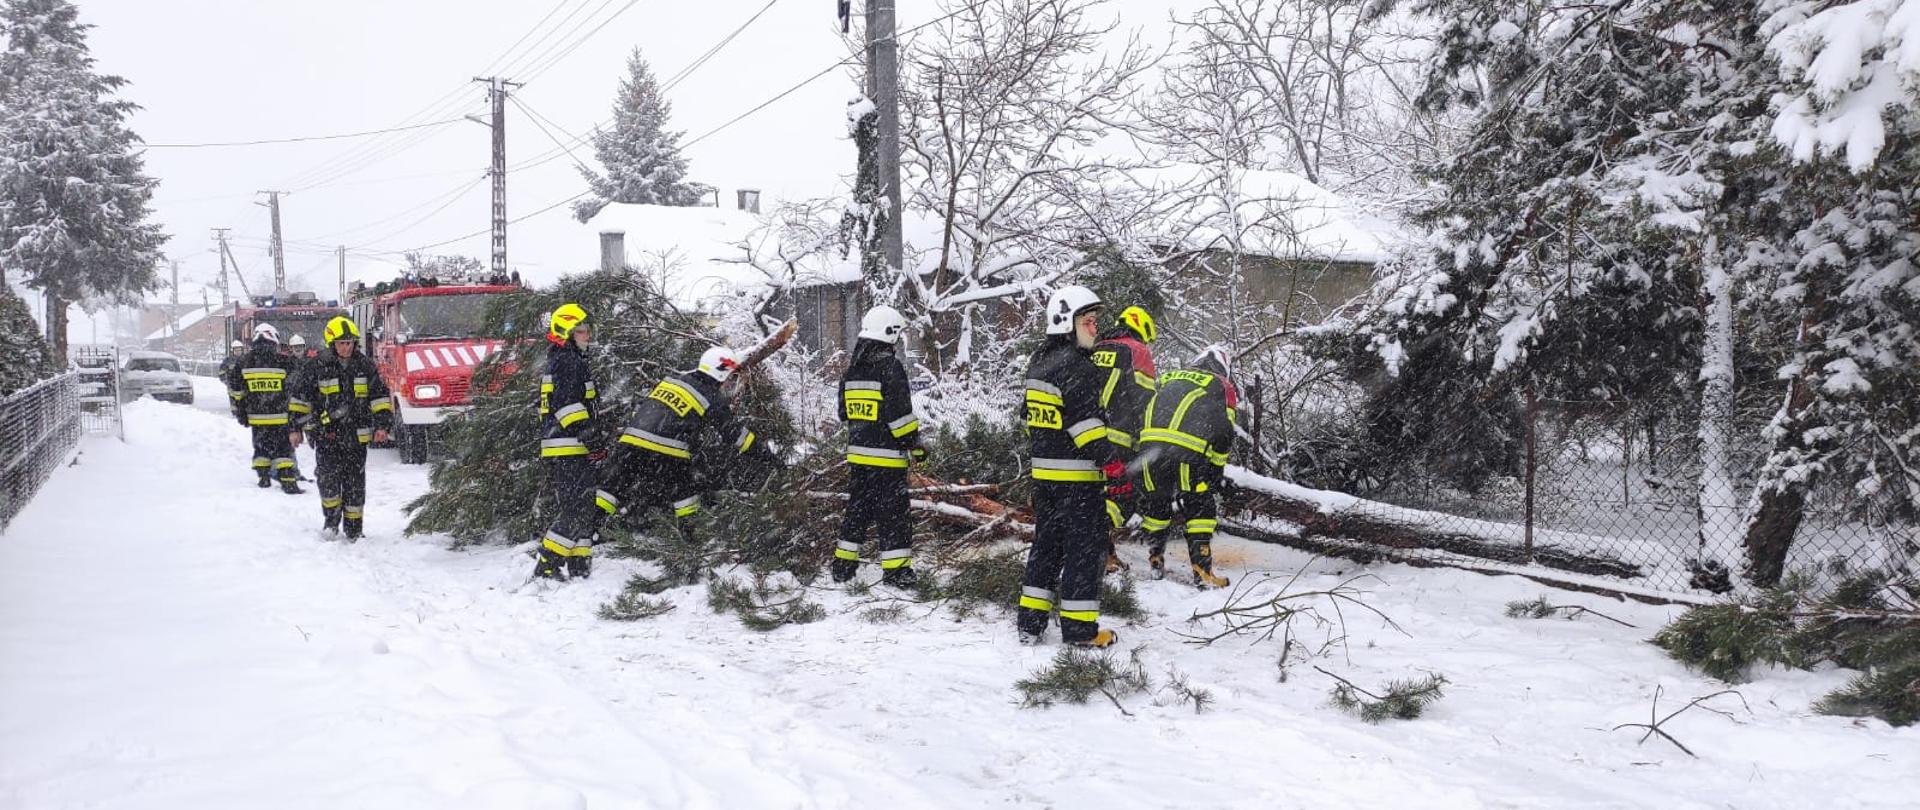 Zdjęcie przedstawia powalone na jezdnię drzewo na skutek intensywnych opadów śniegu. Na zdjęciu widać ośmiu strażaków ubranych w czarne mundury specjalne i seledynowe i białe hełmy. Strażacy usuwają powalone drzewa na jezdnię. Droga jest pokryta gruba warstwę śniegu. Za powalonymi drzewami stoją dwa czerwone pojazdy pożarnicze a za nimi pojazd osobowy. Po prawej stronie widać budynek mieszkalny na dachu jest gruba pokrywa śniegu.